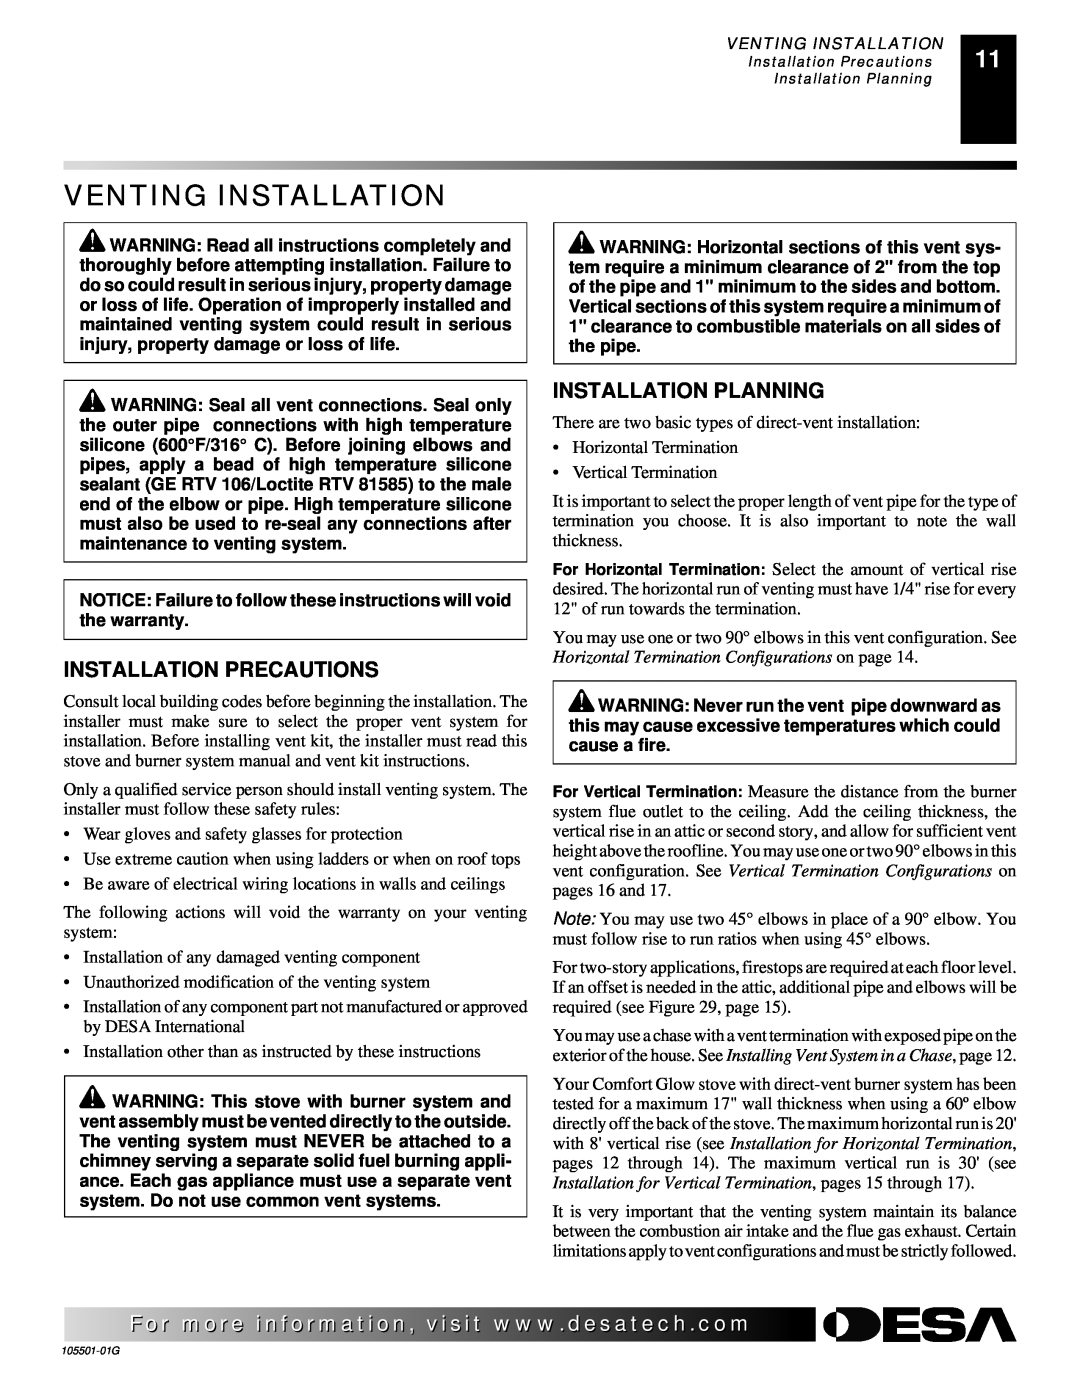 Desa Tech CDVBPC, CDVBNC manual Venting Installation, Installation Precautions, Installation Planning 